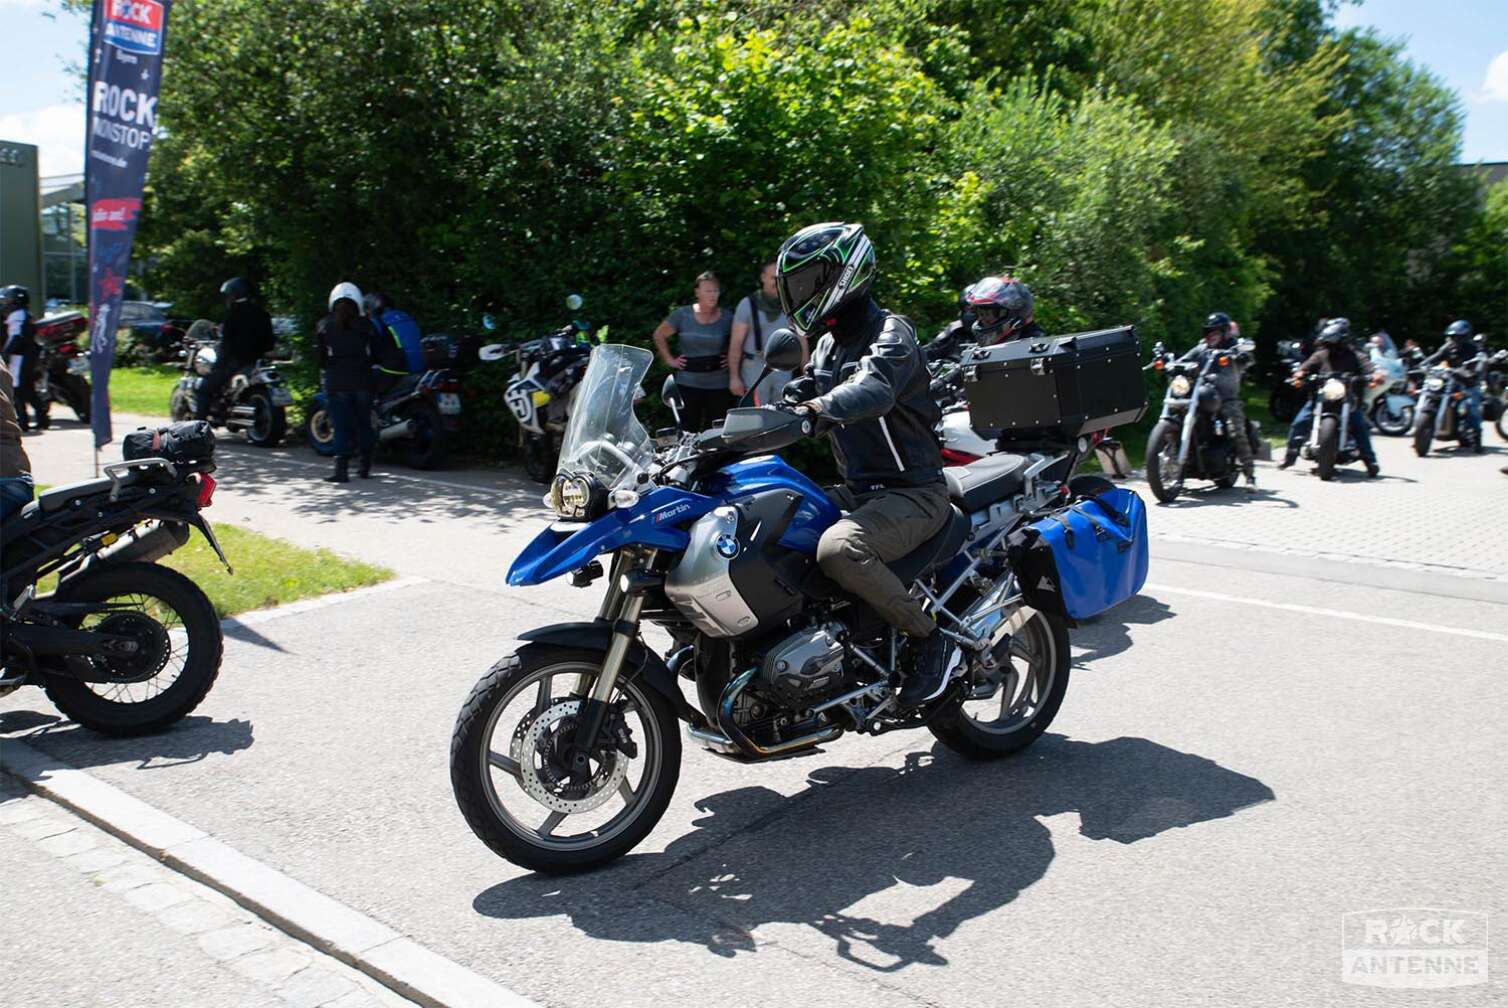 Foto von der ROCK ANTENNE Motorradtour 2024 - Eindrücke von den Motorrädern der Teilnehmer